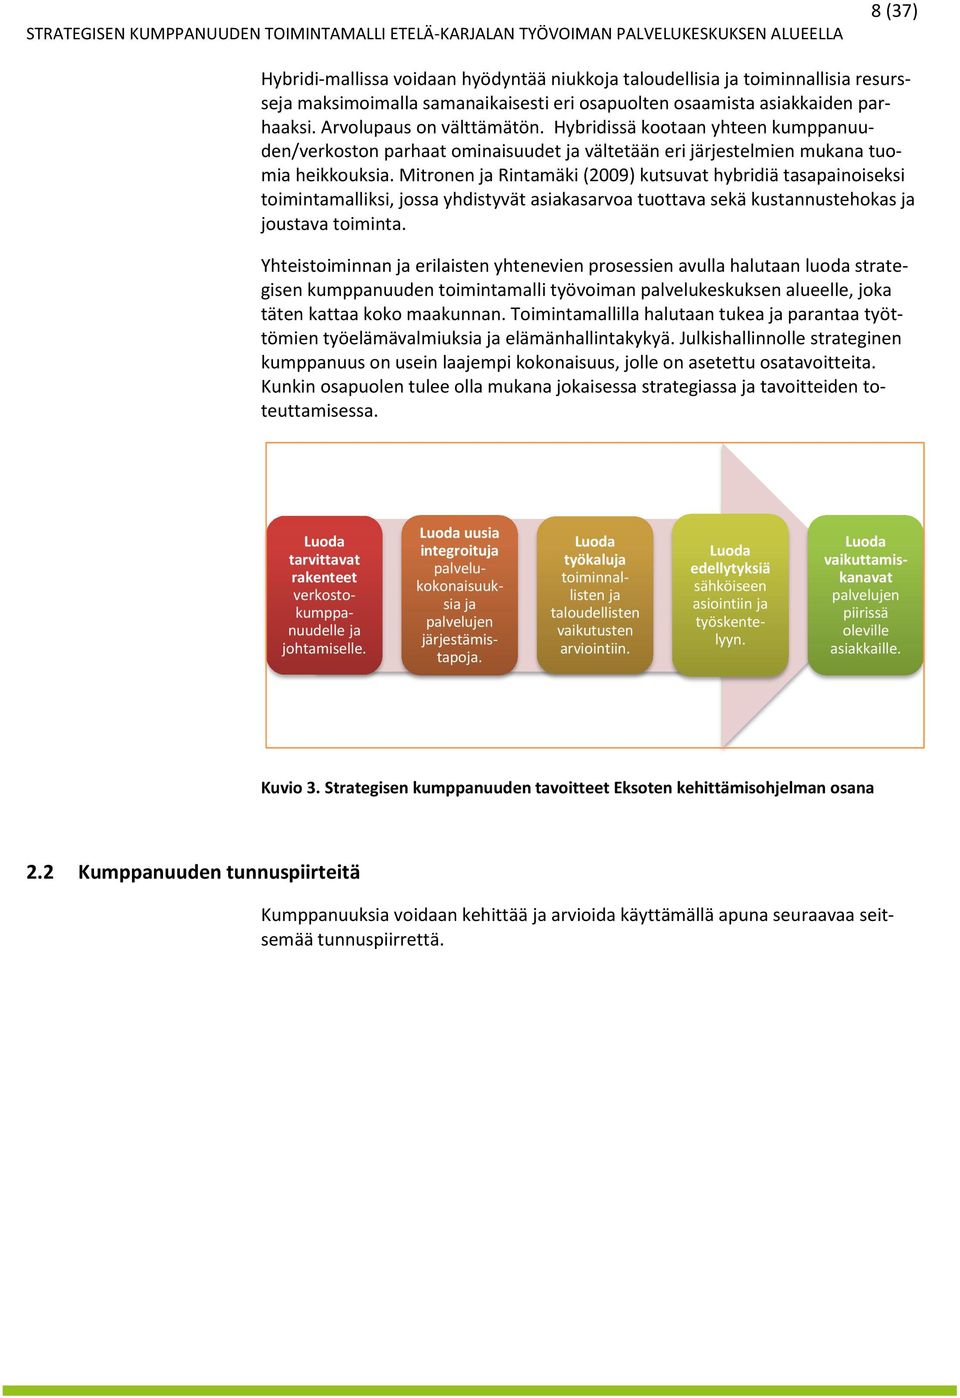 Mitronen ja Rintamäki (2009) kutsuvat hybridiä tasapainoiseksi toimintamalliksi, jossa yhdistyvät asiakasarvoa tuottava sekä kustannustehokas ja joustava toiminta.